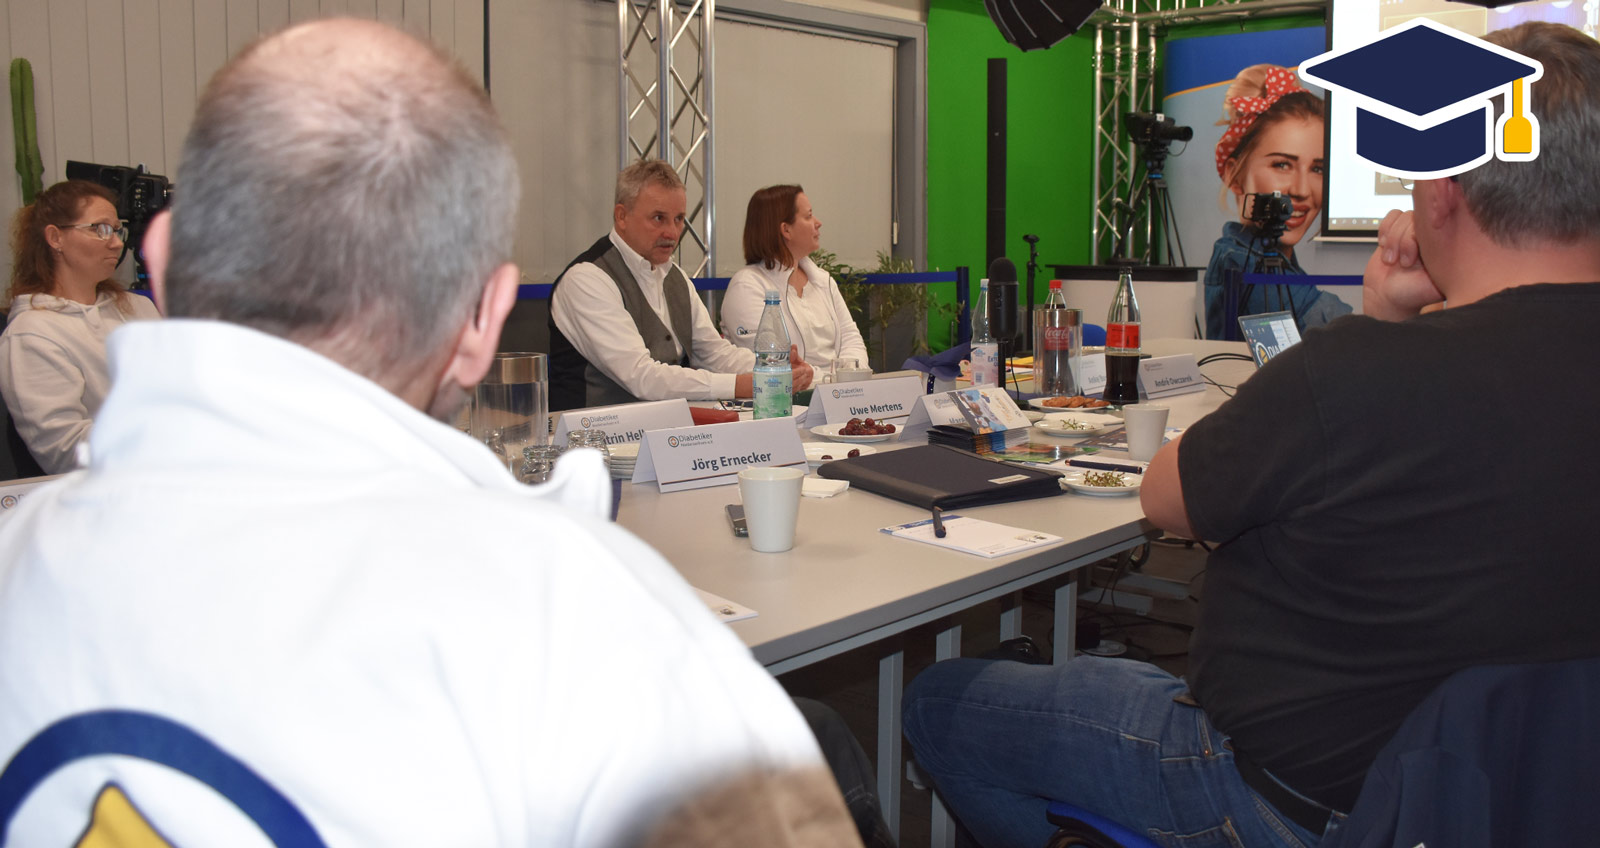 Eine Gruppe von Menschen um einen Tisch, im Hintergund eine Leinwand mit zugeschalteter Videokonferenz. Ein Mann mit Weste referiert. Oben rechts ein blau-gelber Doktorhut im Stil eines Senderlogos